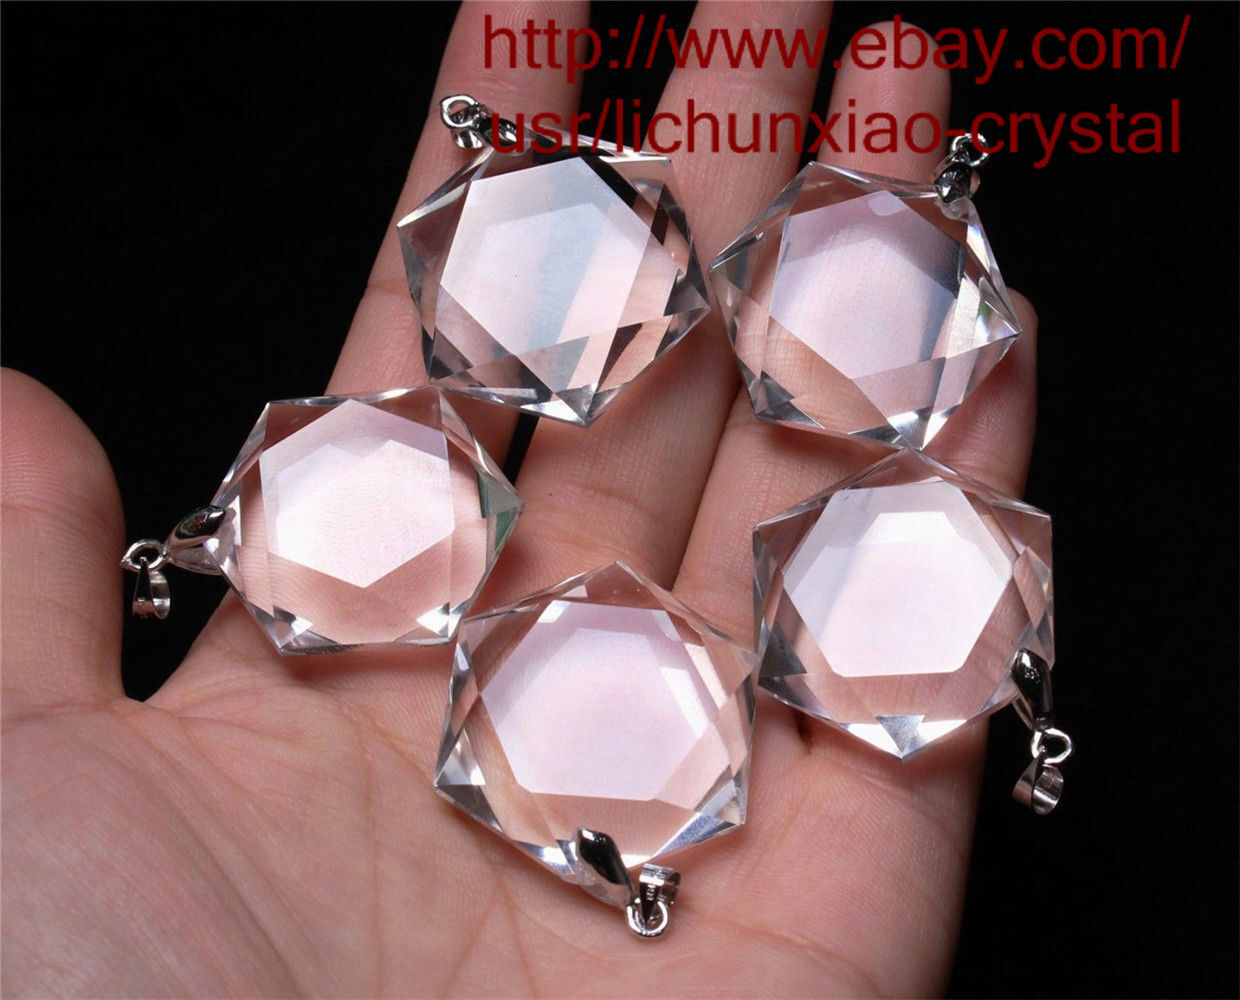 20 Pcs Hexagon Pendant - Natural Clear Quartz Crystal 3D Hexagon / Star of David